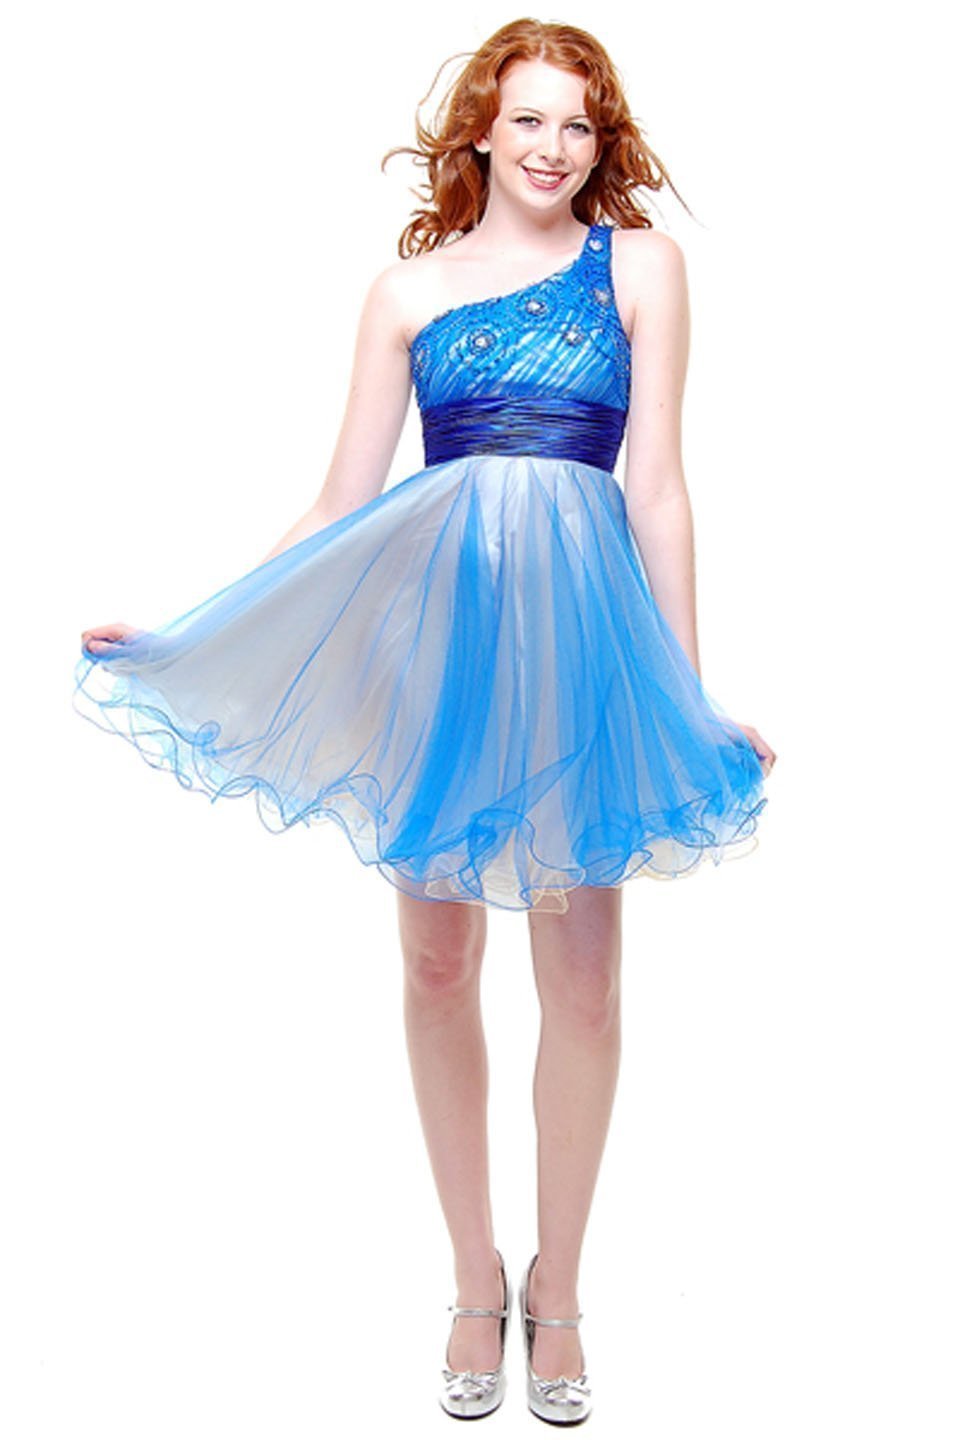 blue short prom dresses one shoulder 2013 graduation dresses royal